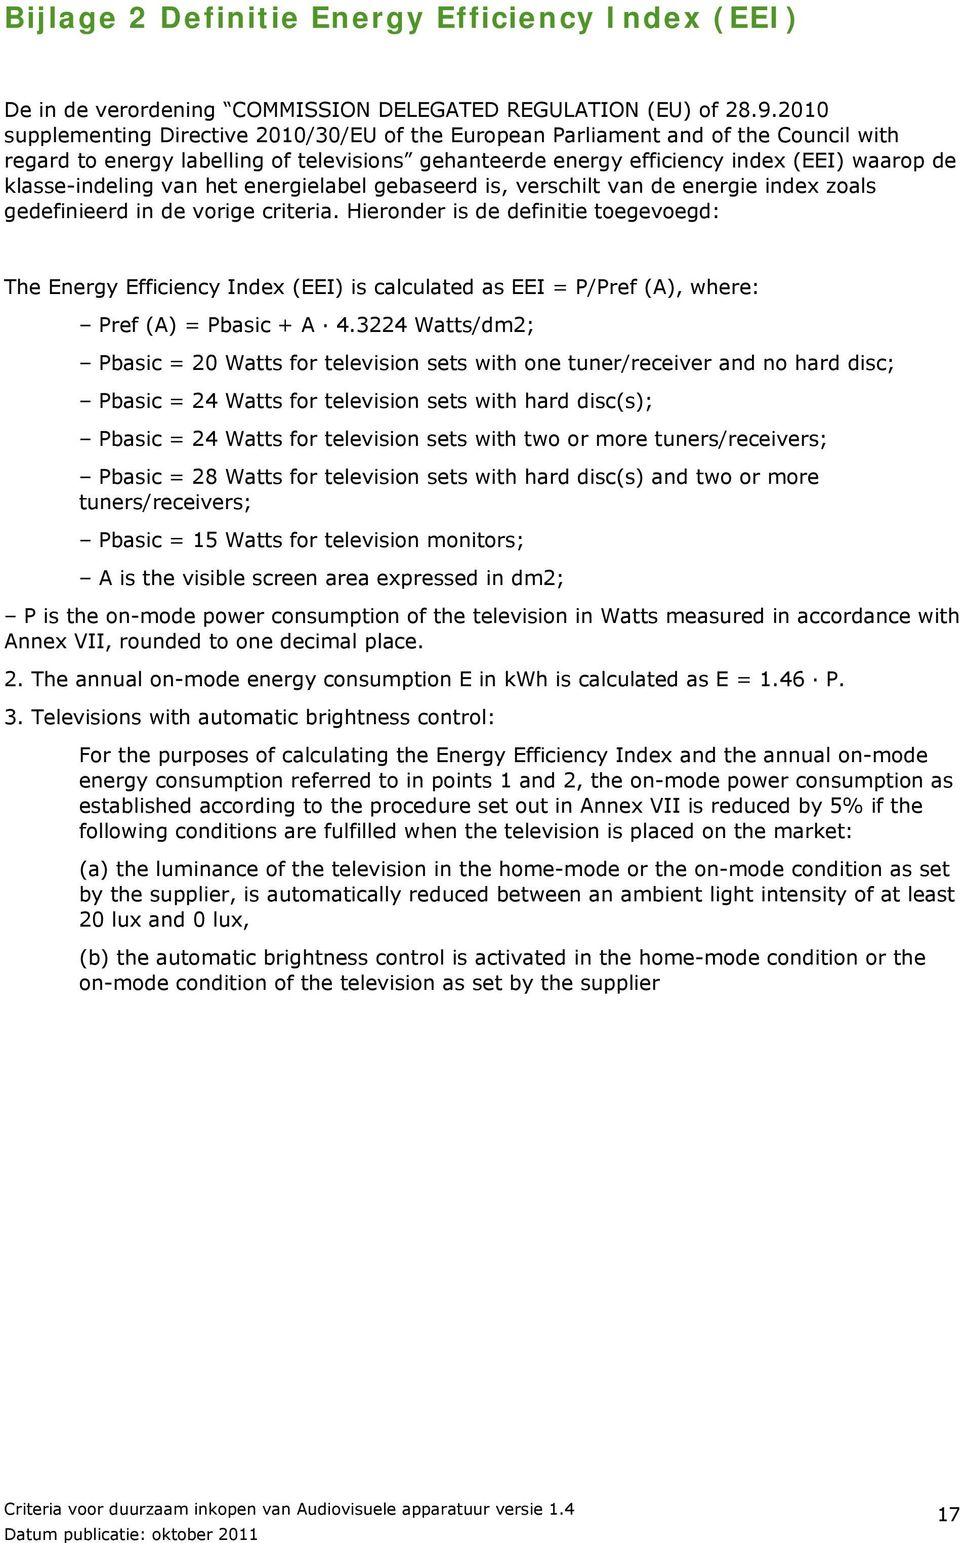 klasse-indeling van het energielabel gebaseerd is, verschilt van de energie index zoals gedefinieerd in de vorige criteria.